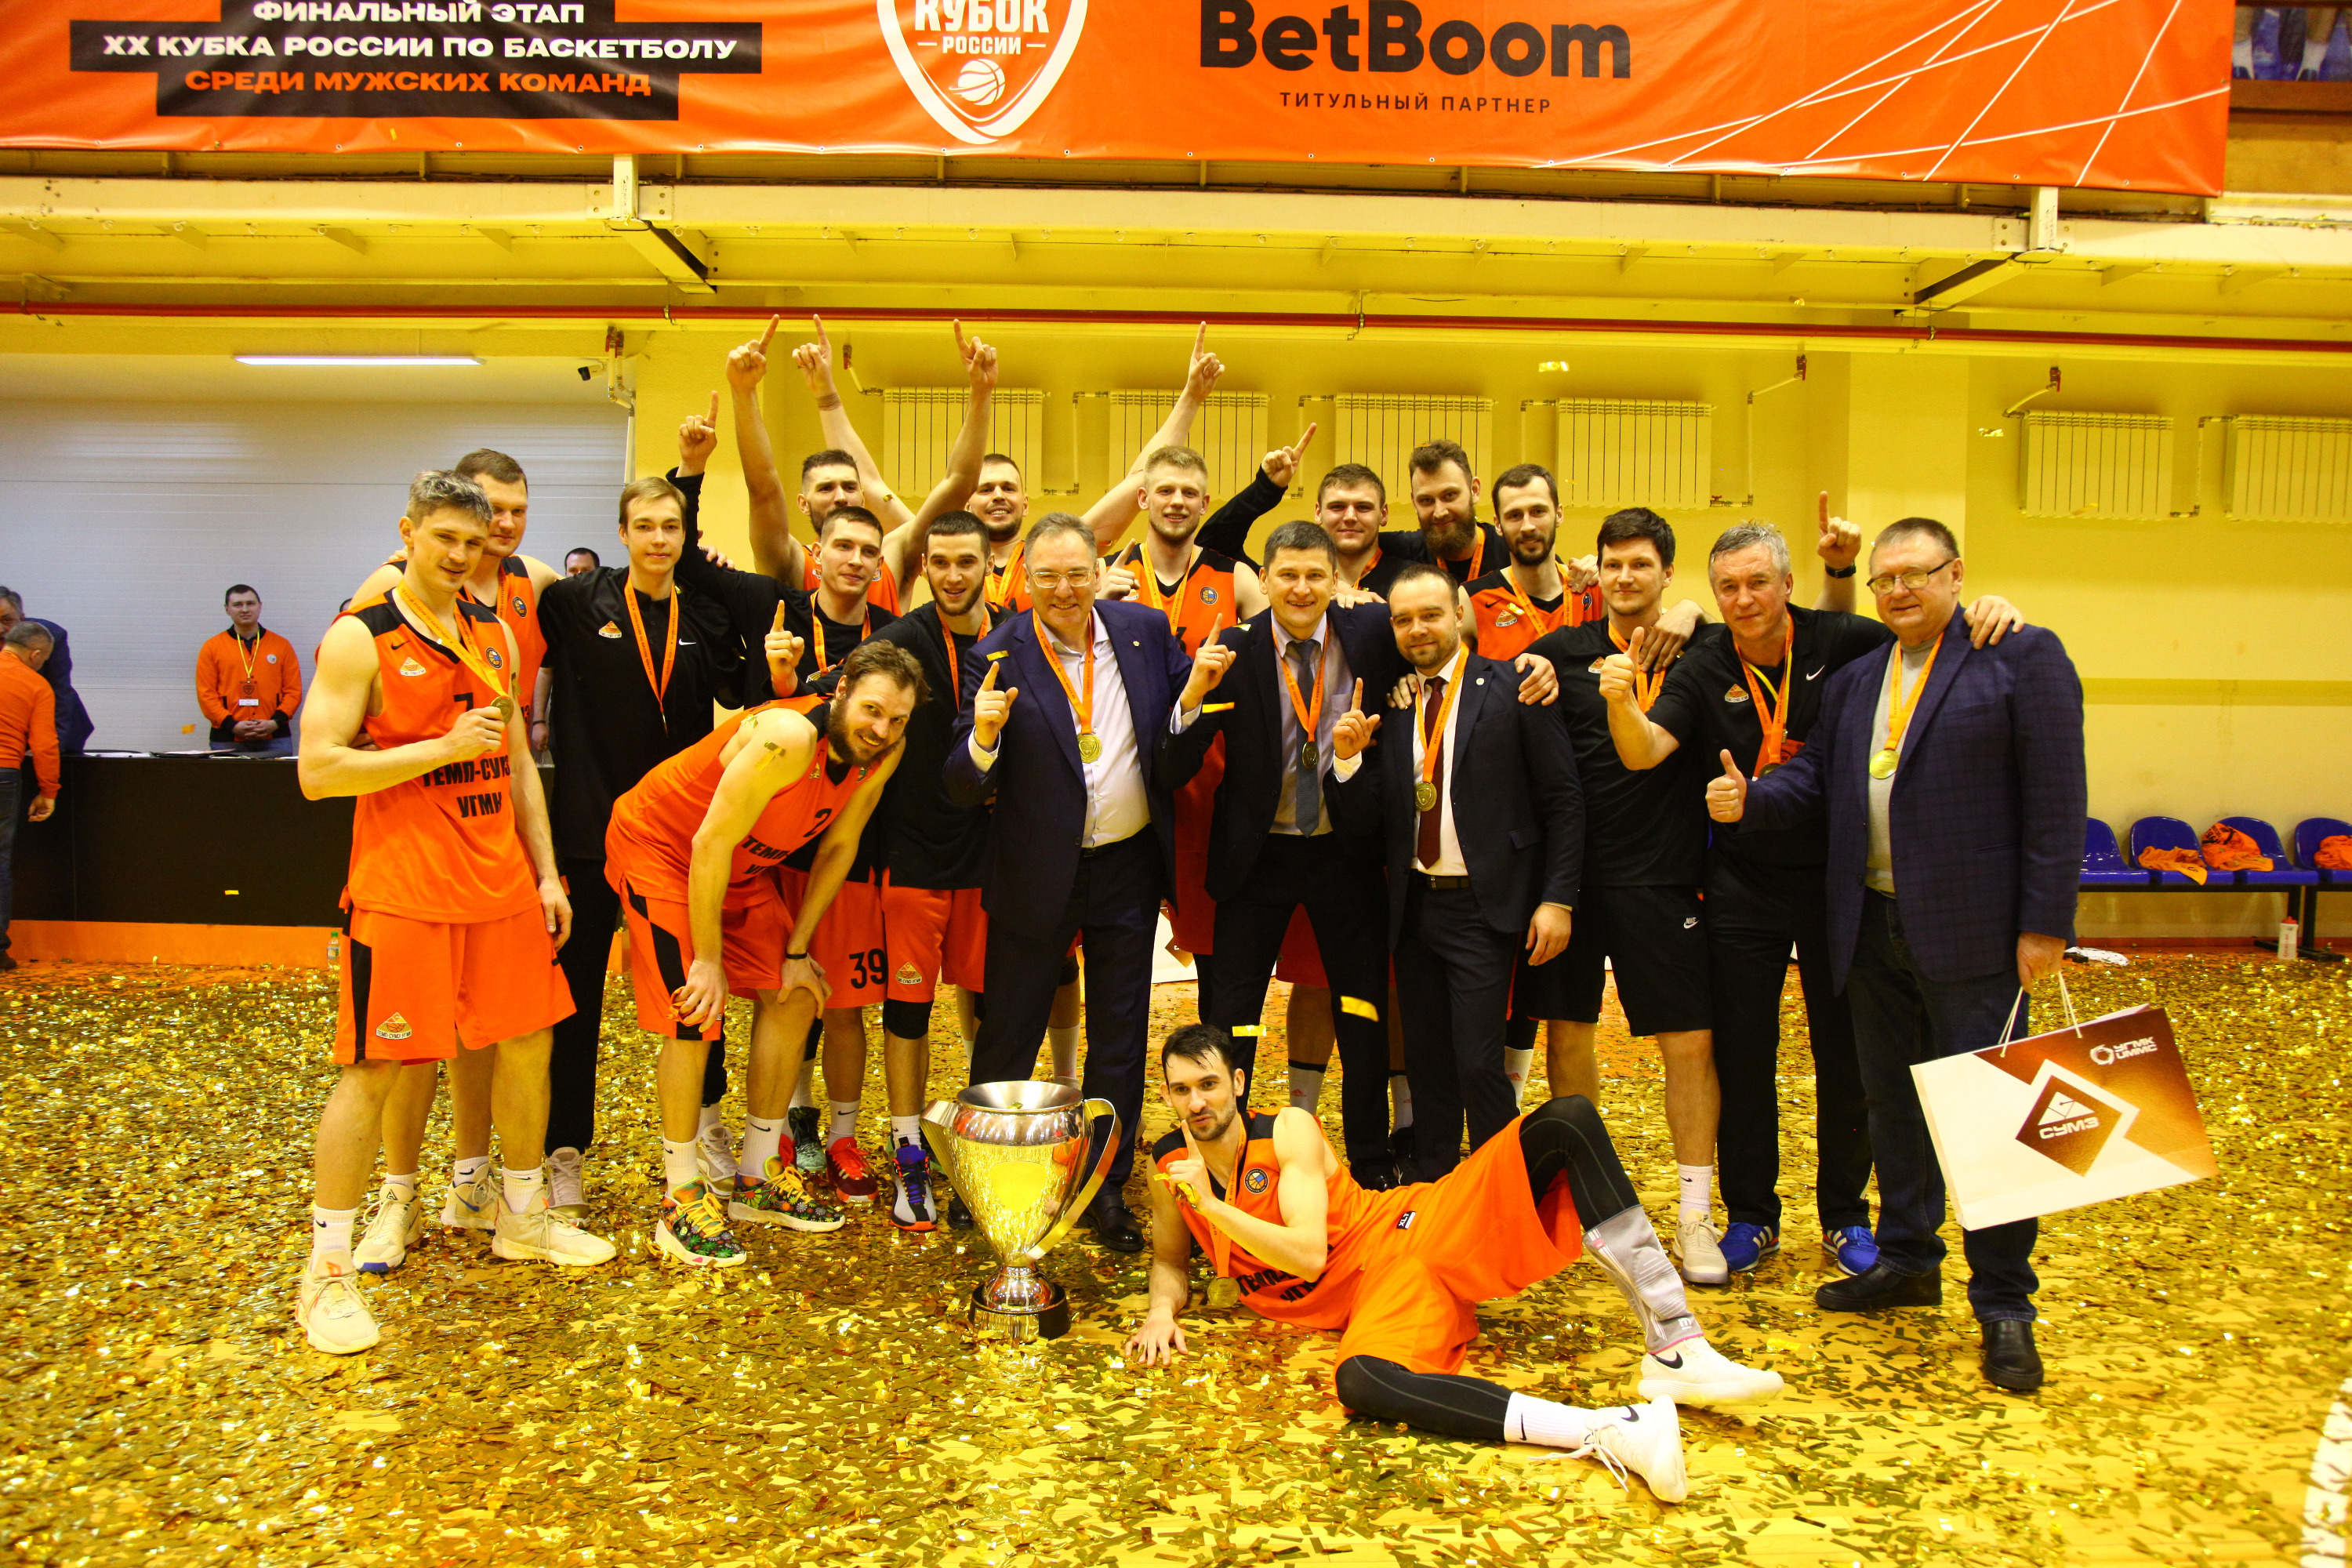 Вошли в историю: уральский баскетбольный клуб впервые выиграл Кубок России